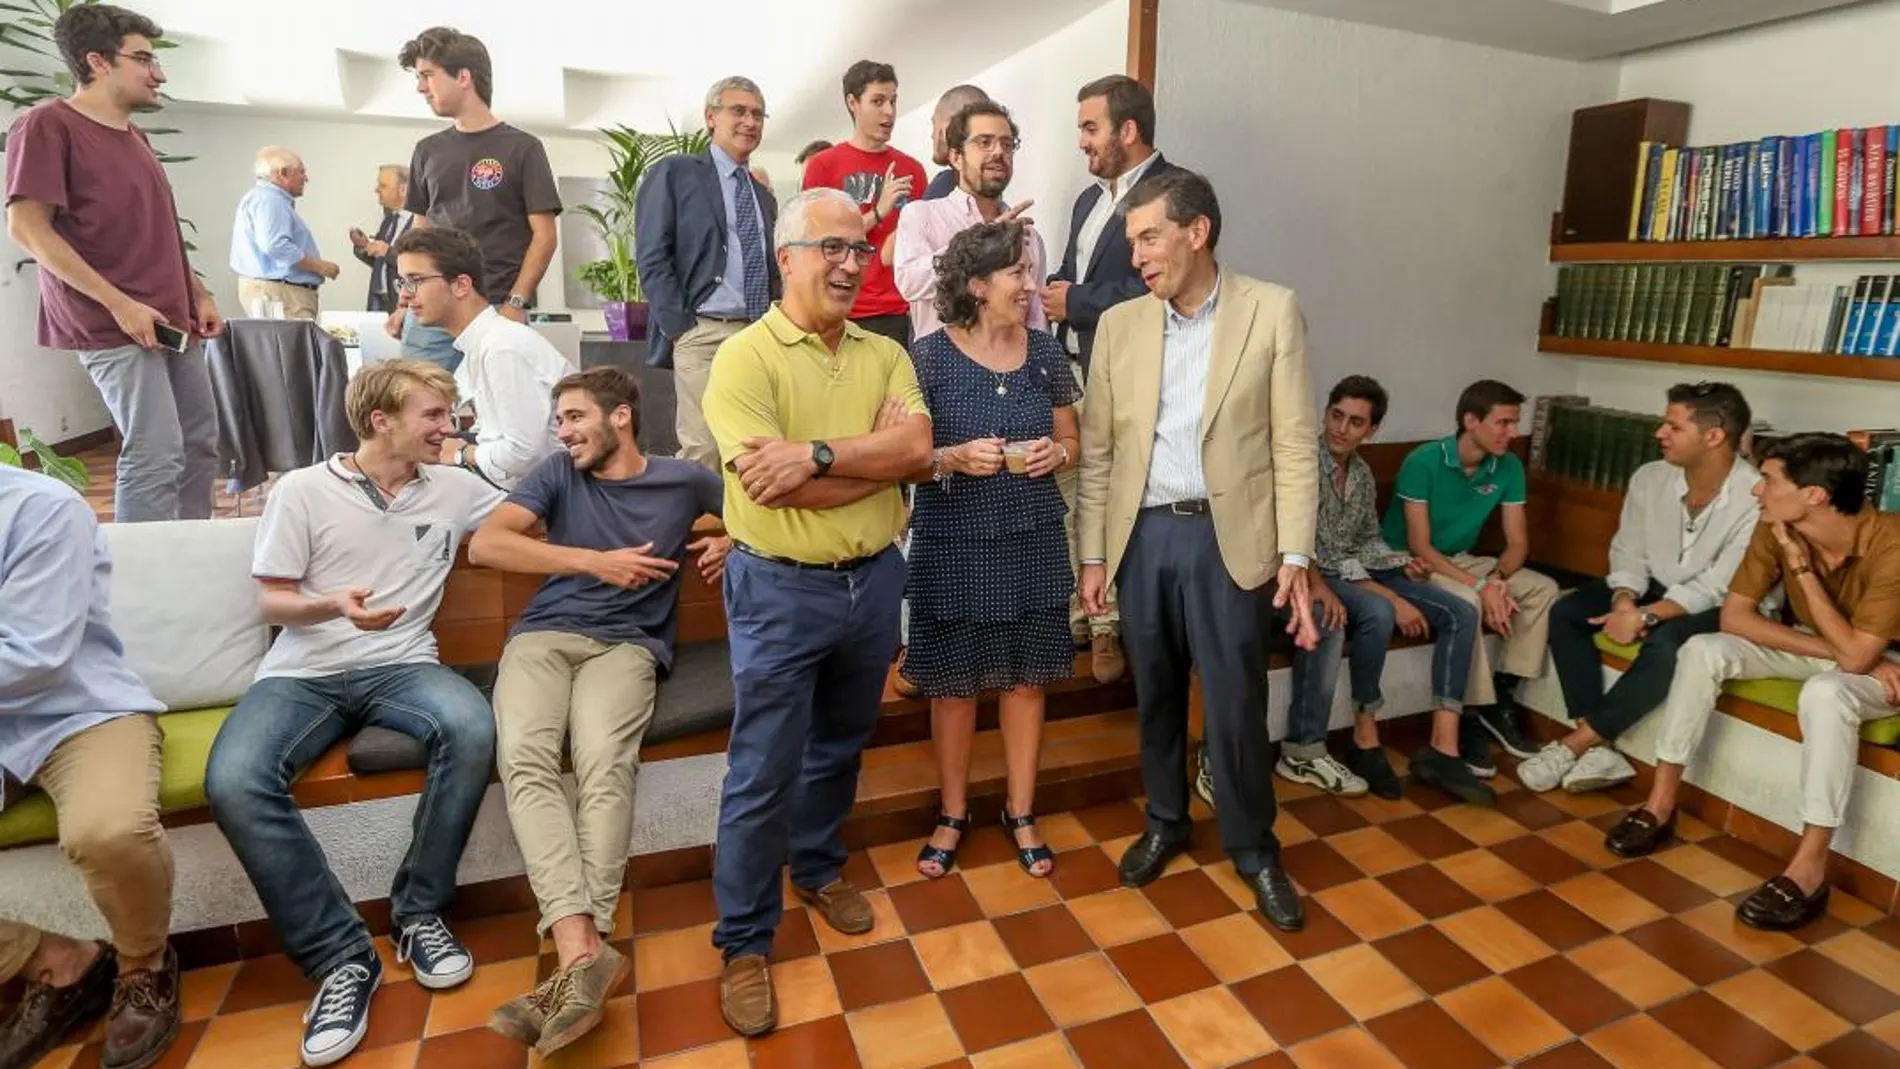 El ponente, Álvaro Rubiales, oncólogo, junto a María Luisa del Valle y Santiago Viu, conversan en presencia de algunos de los asistentes al encuentro, en el Colegio Mayor Peñafiel de Valladolid